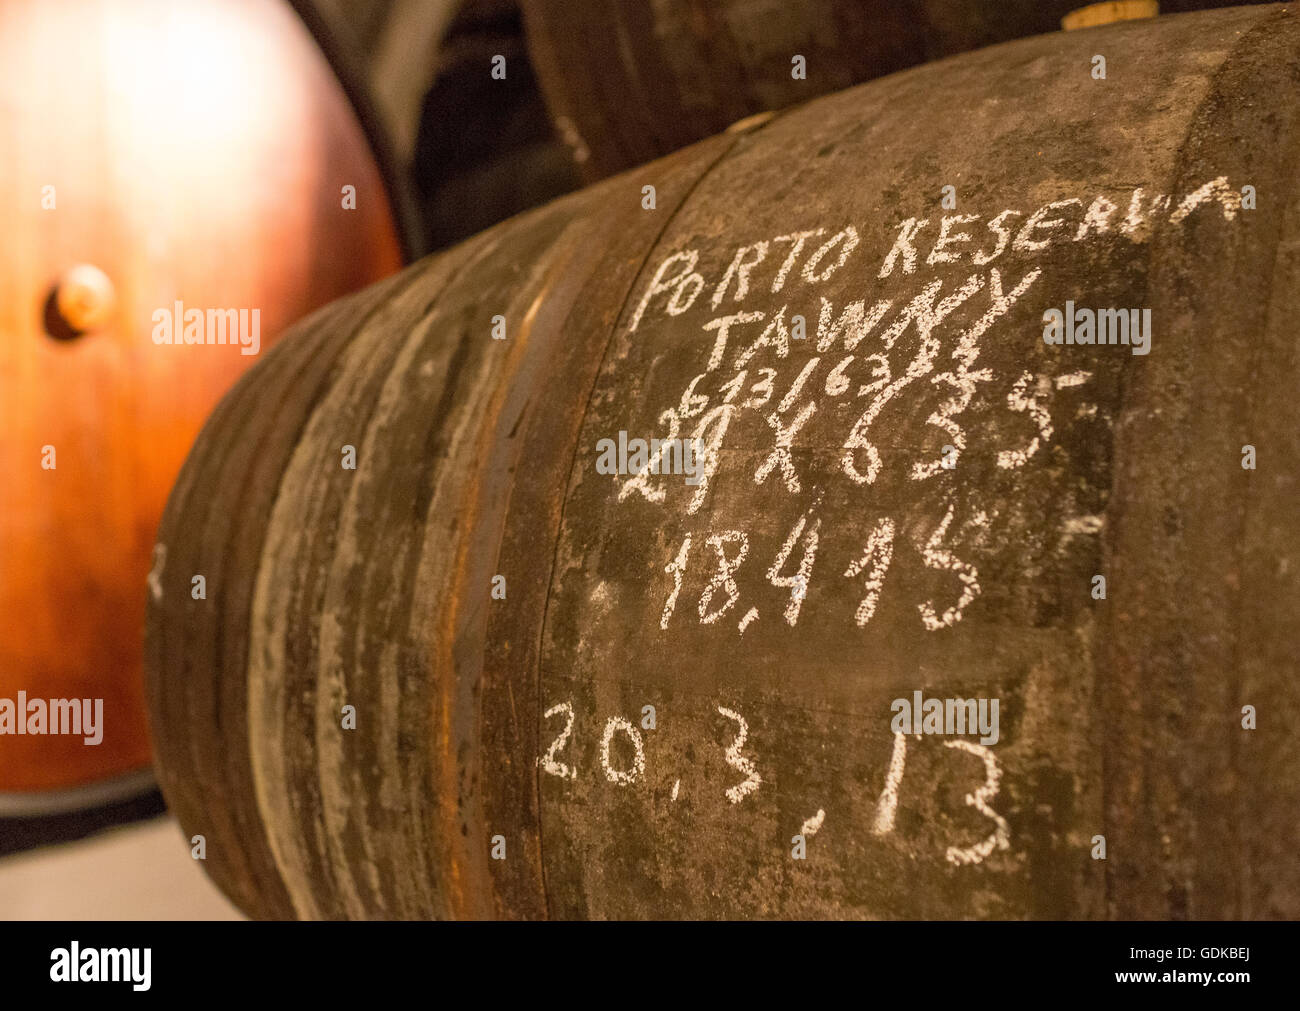 Port wine barrels, wine cellar wine cellar Sandeman in Gaia, Porto, Vila Nova de Gaia, Porto District, Portugal, Europe, Travel, Stock Photo